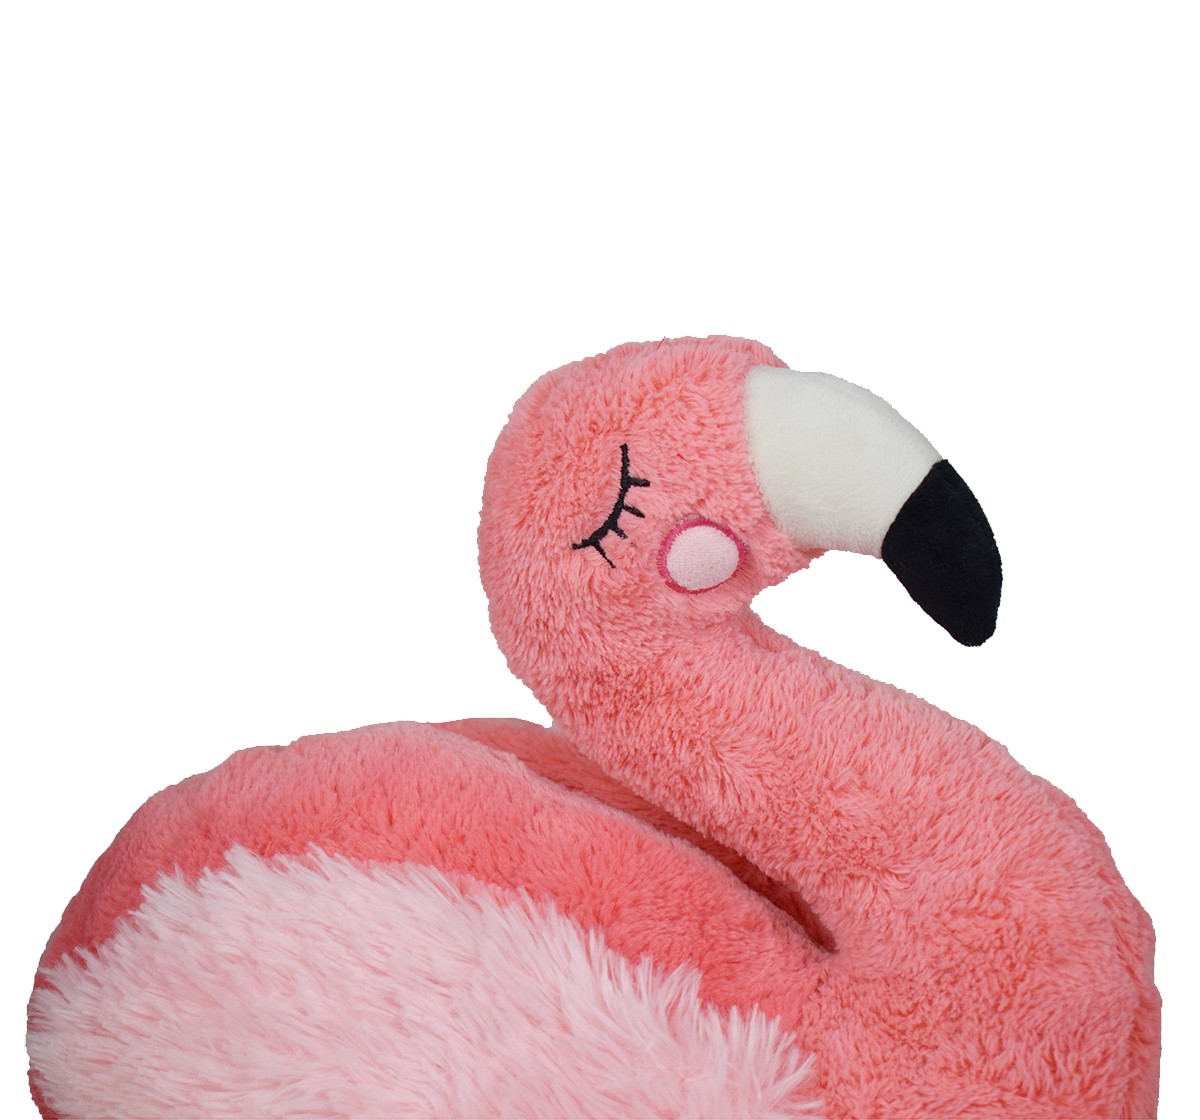 Mirada 60cm flamingo with wings Multicolor 3Y+